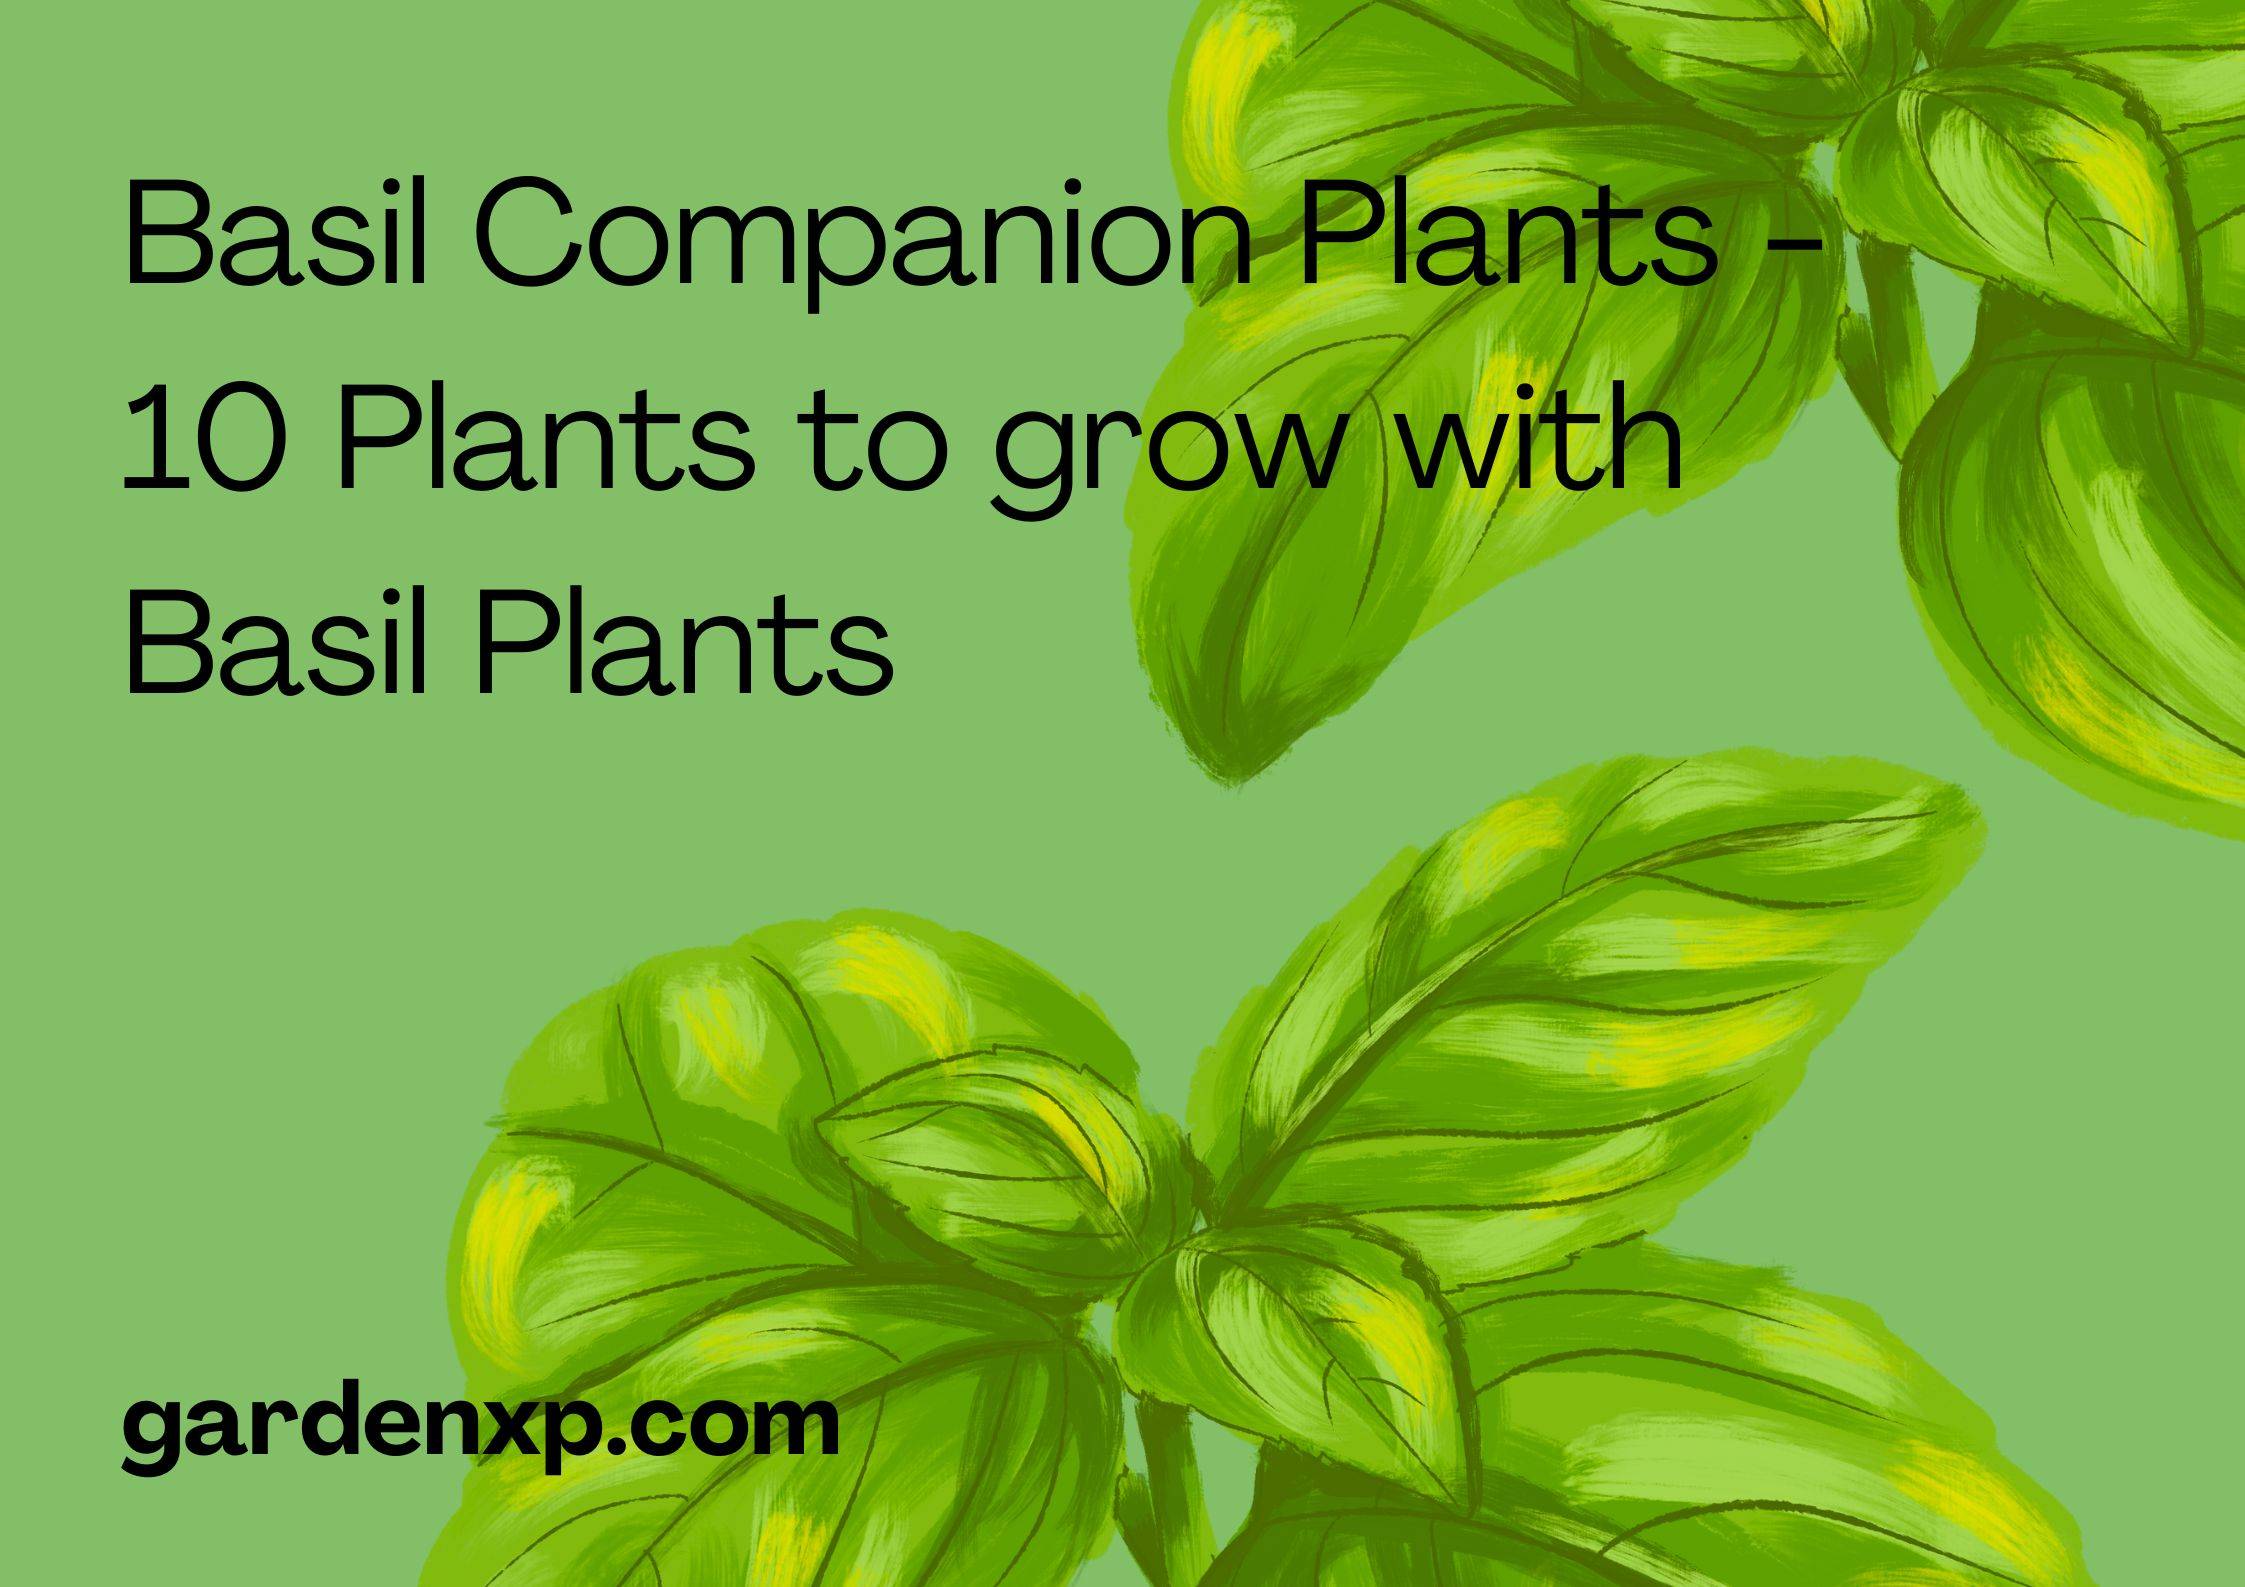 Basil Companion Plants - 10 Plants to grow with Basil Plants